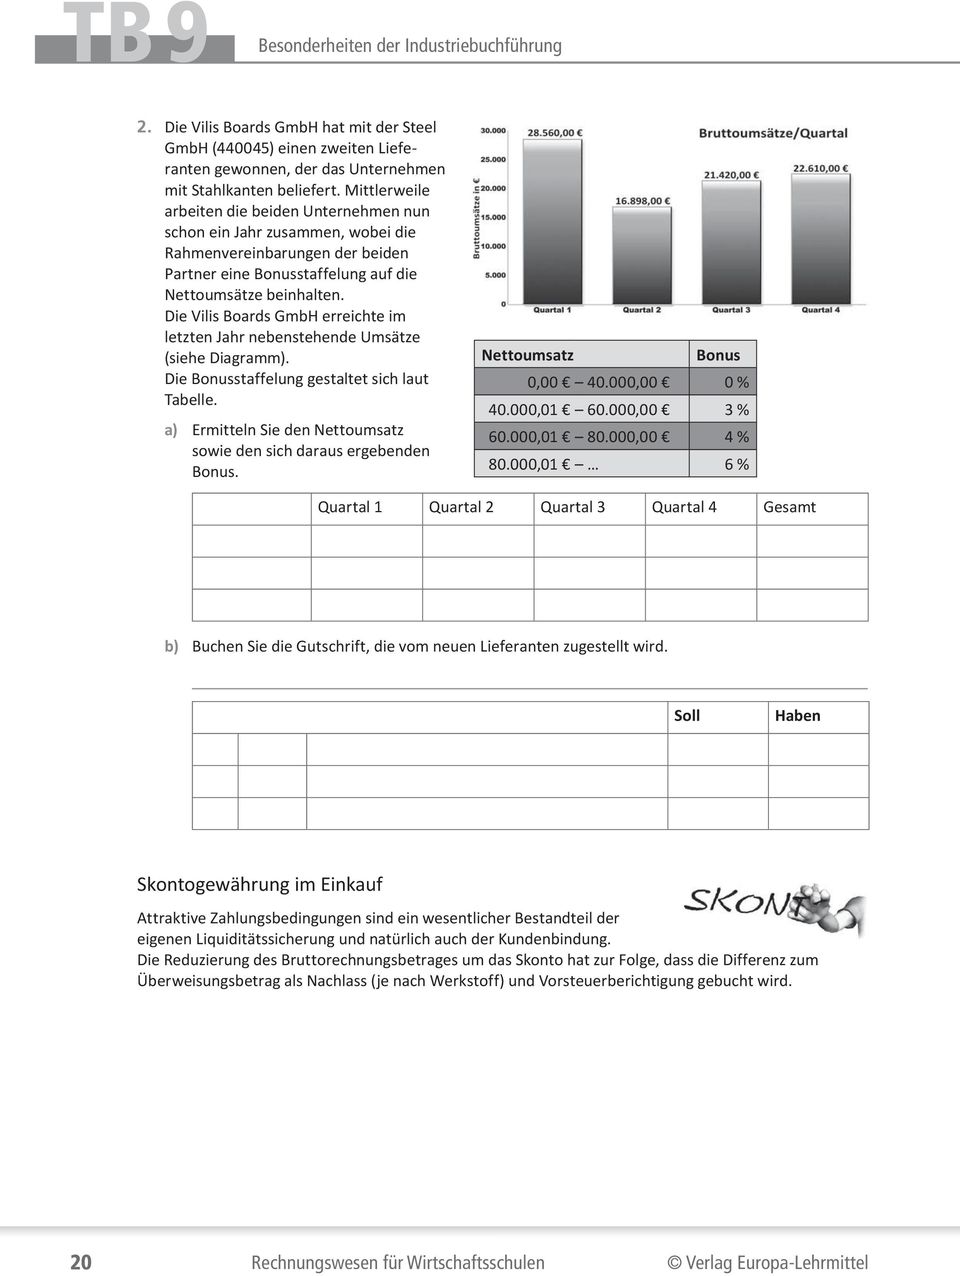 Die Vilis Boards GmbH erreichte im letzten Jahr nebenstehende Umsätze (siehe Diagramm). Die Bonusstaffelung gestaltet sich laut Tabelle.